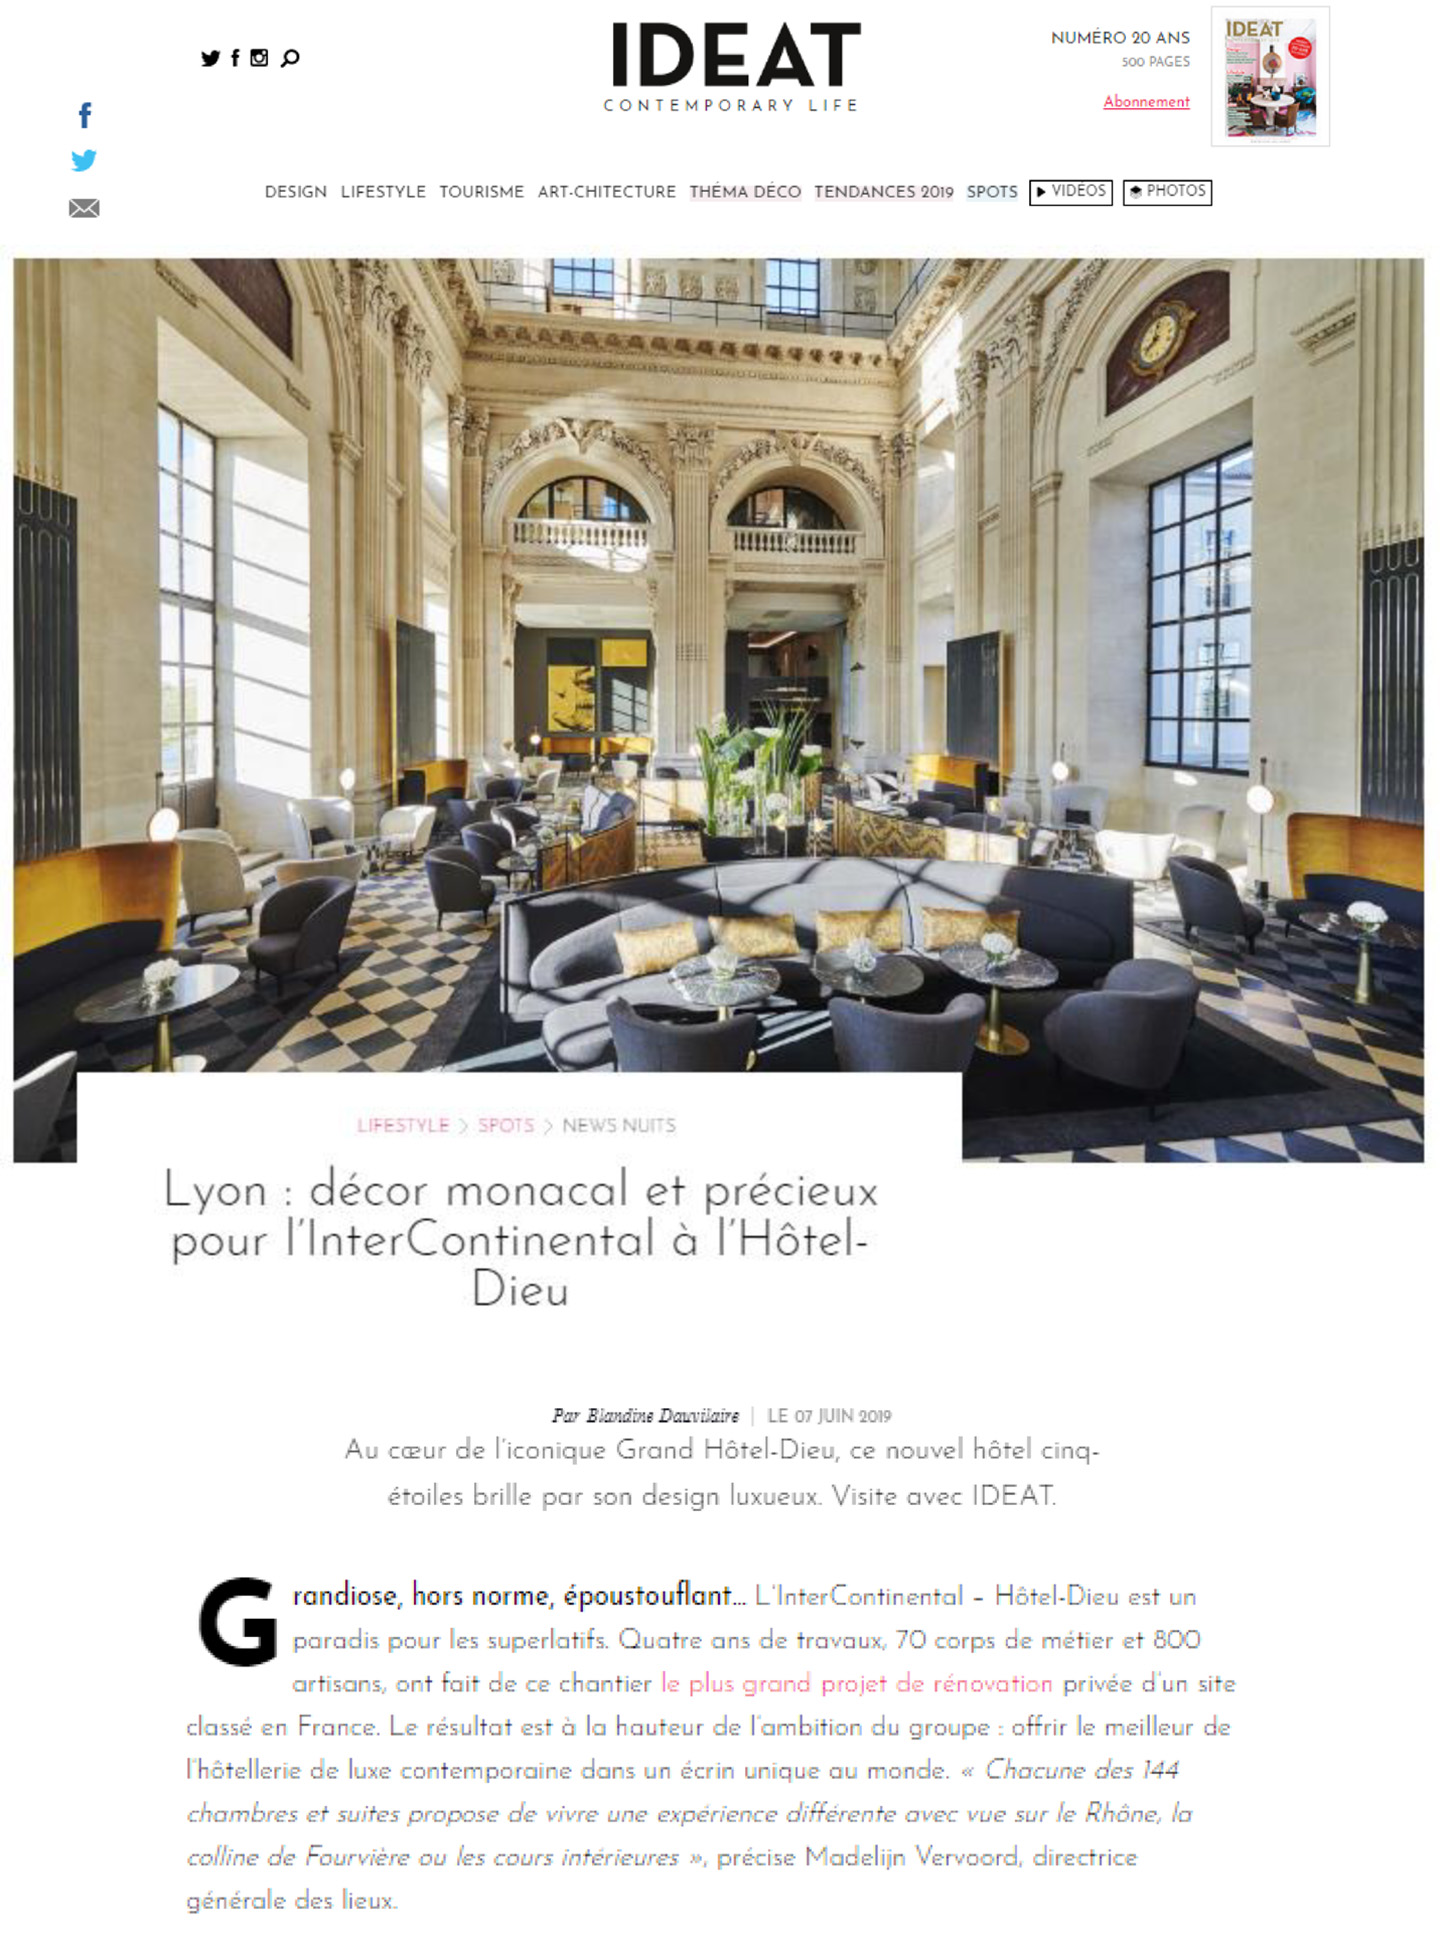 Article sur l'InterContinental Lyon hôtel dieu réalisé par le studio jean-Philippe Nuel dans le magazine ideat, nouvel hotel de luxe, architecture d'intérieur de luxe, centre historique réhabilité